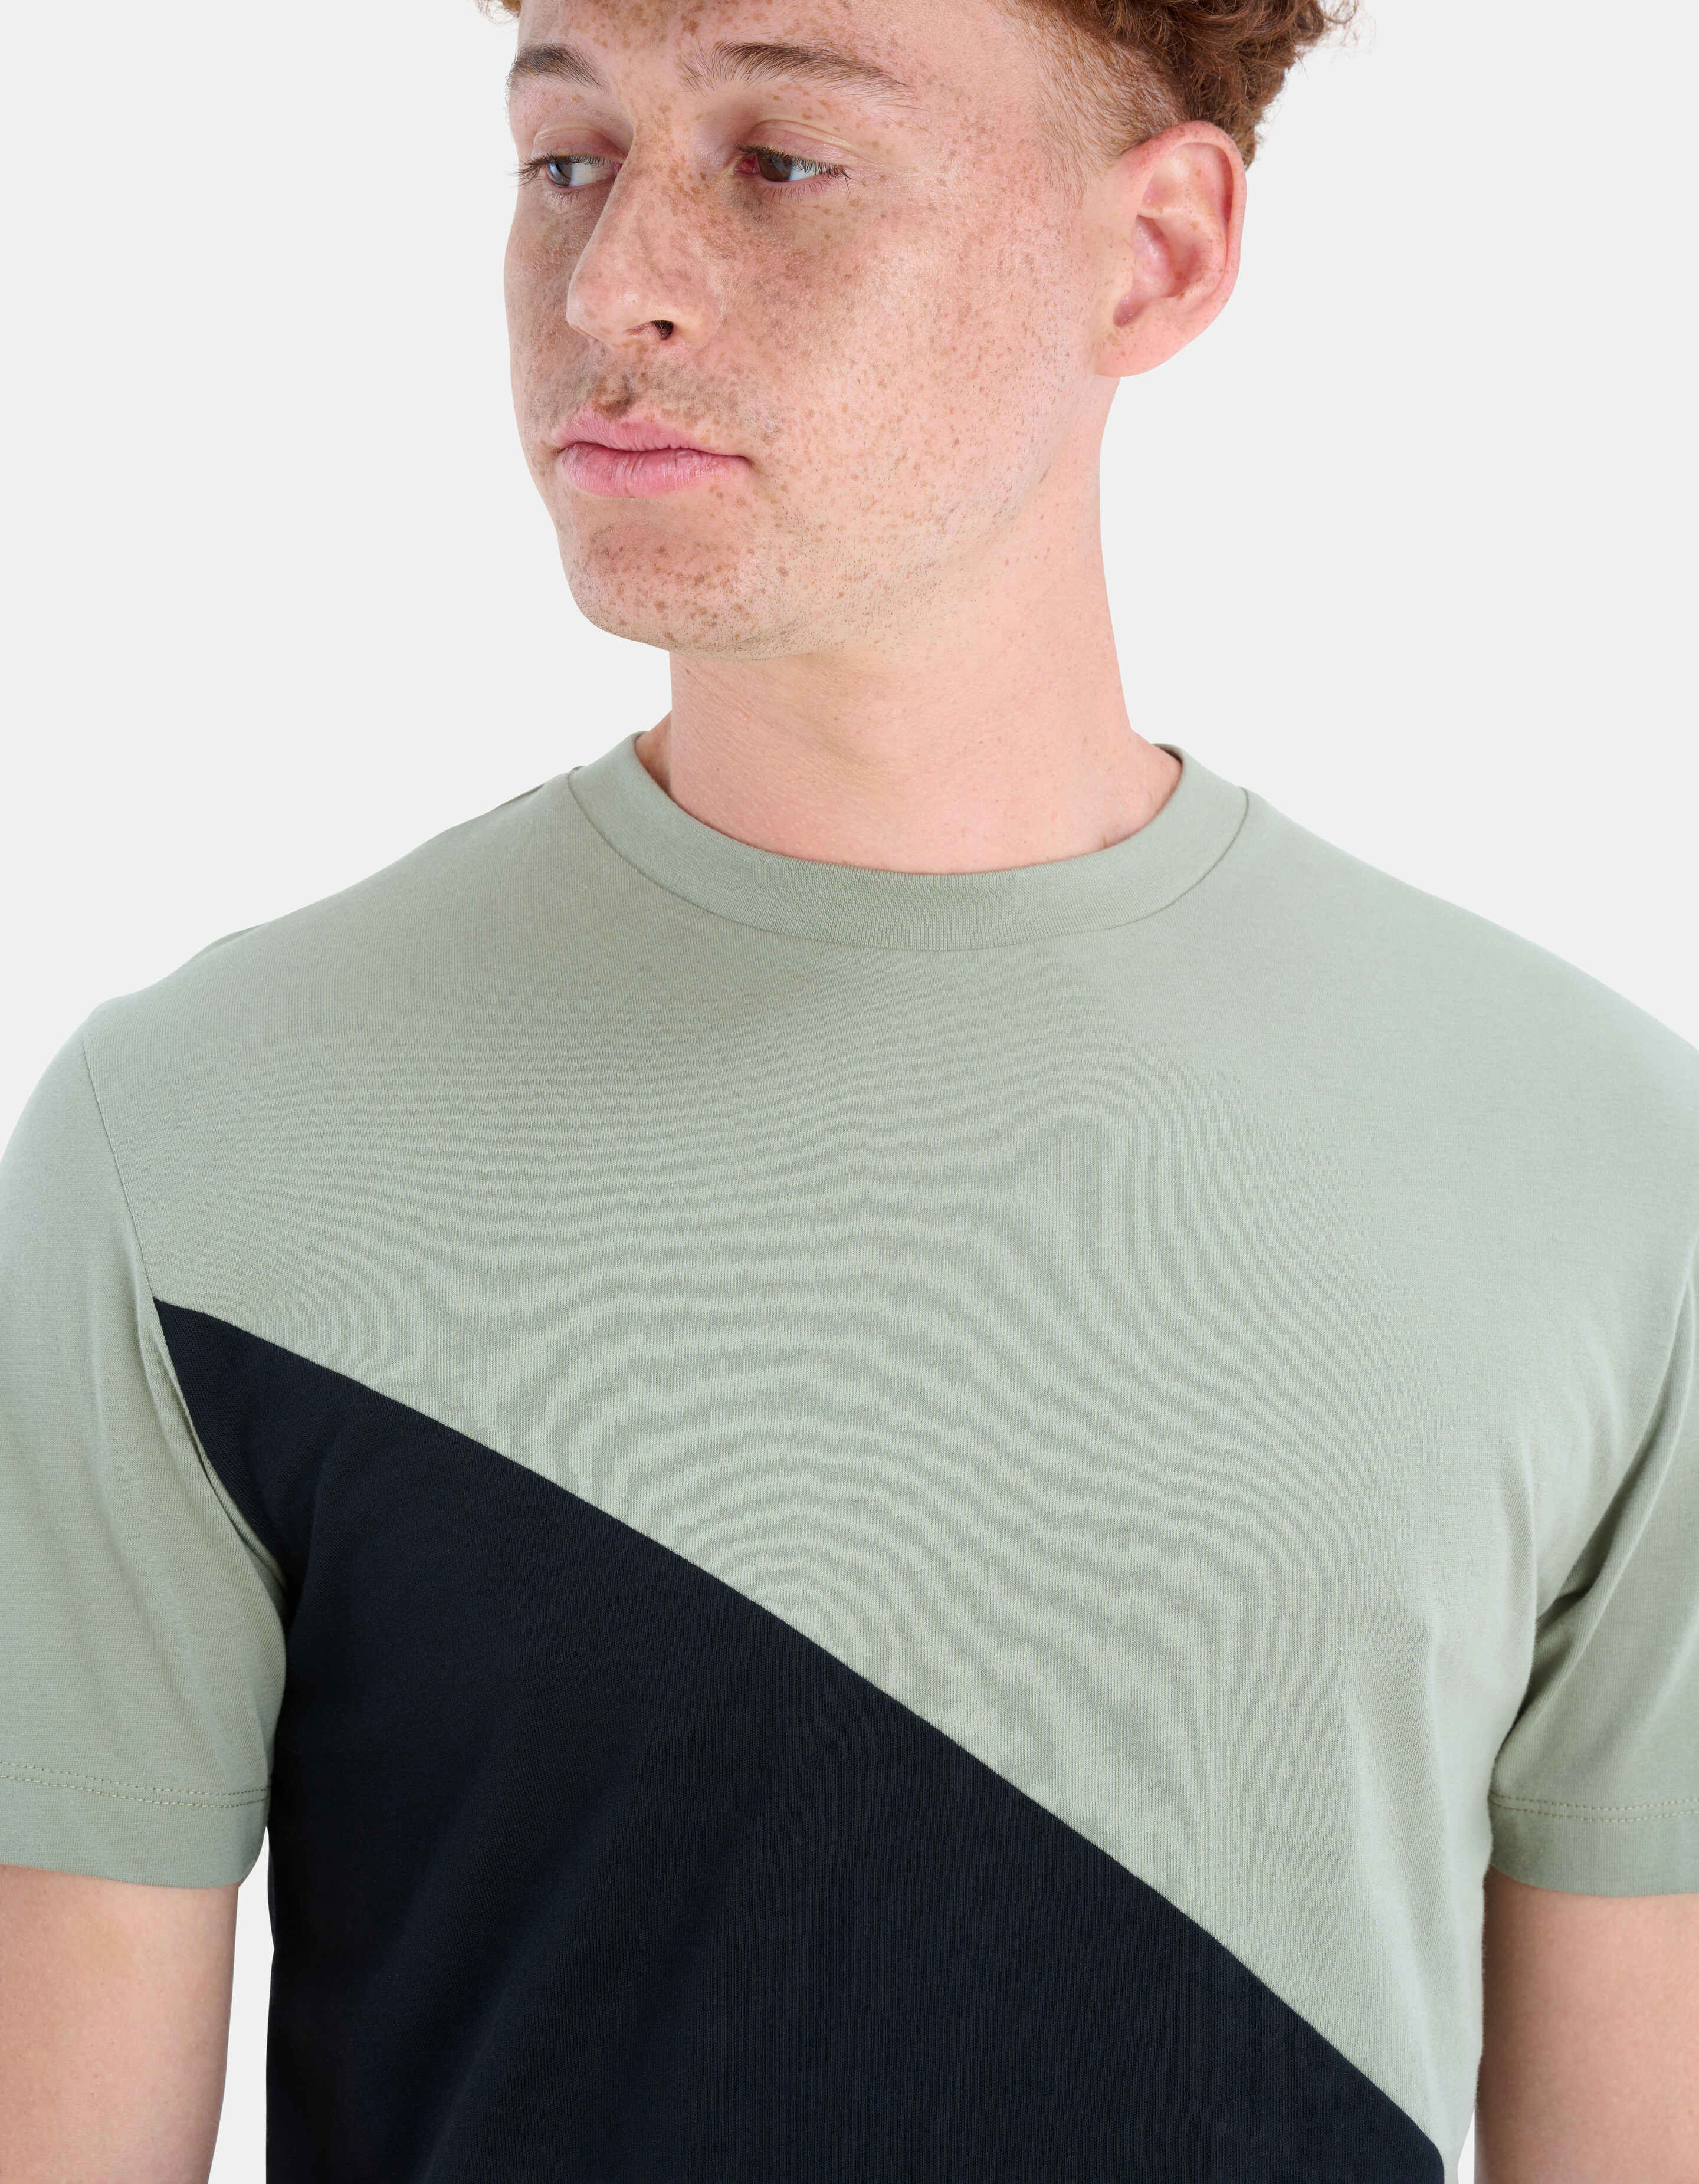 Diagonales T-Shirt REFILL